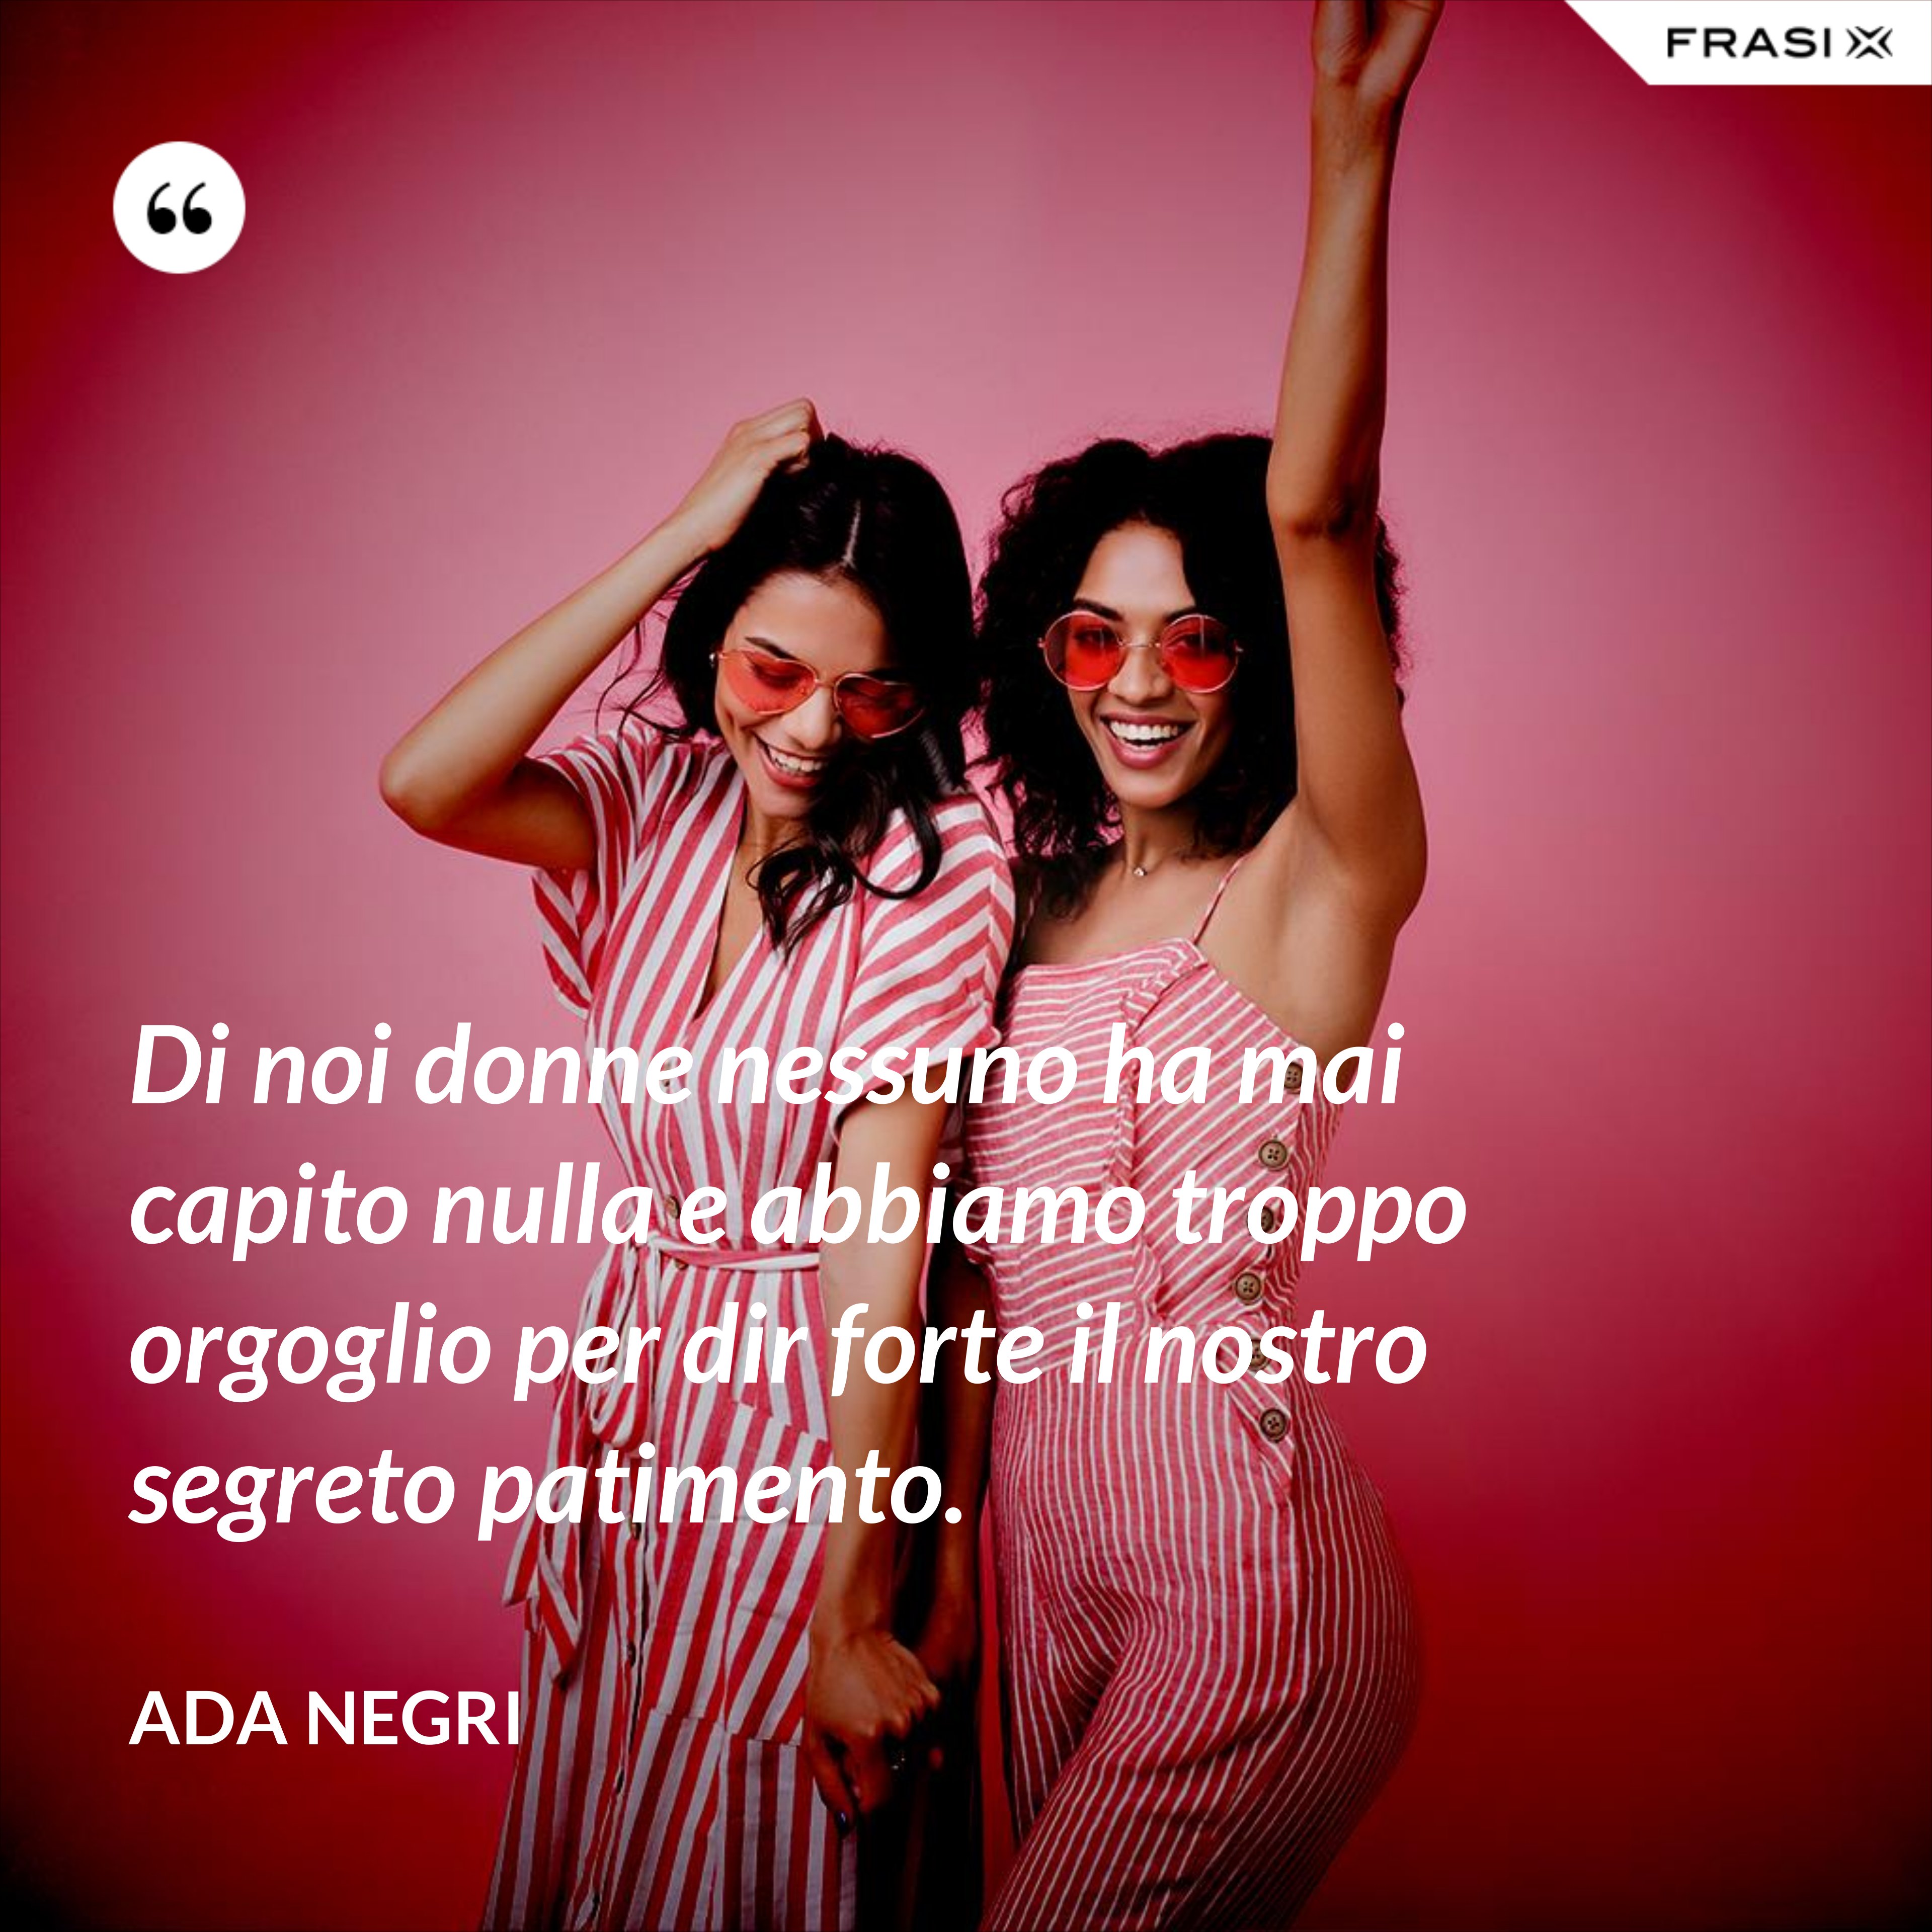 Di noi donne nessuno ha mai capito nulla e abbiamo troppo orgoglio per dir forte il nostro segreto patimento. - Ada Negri